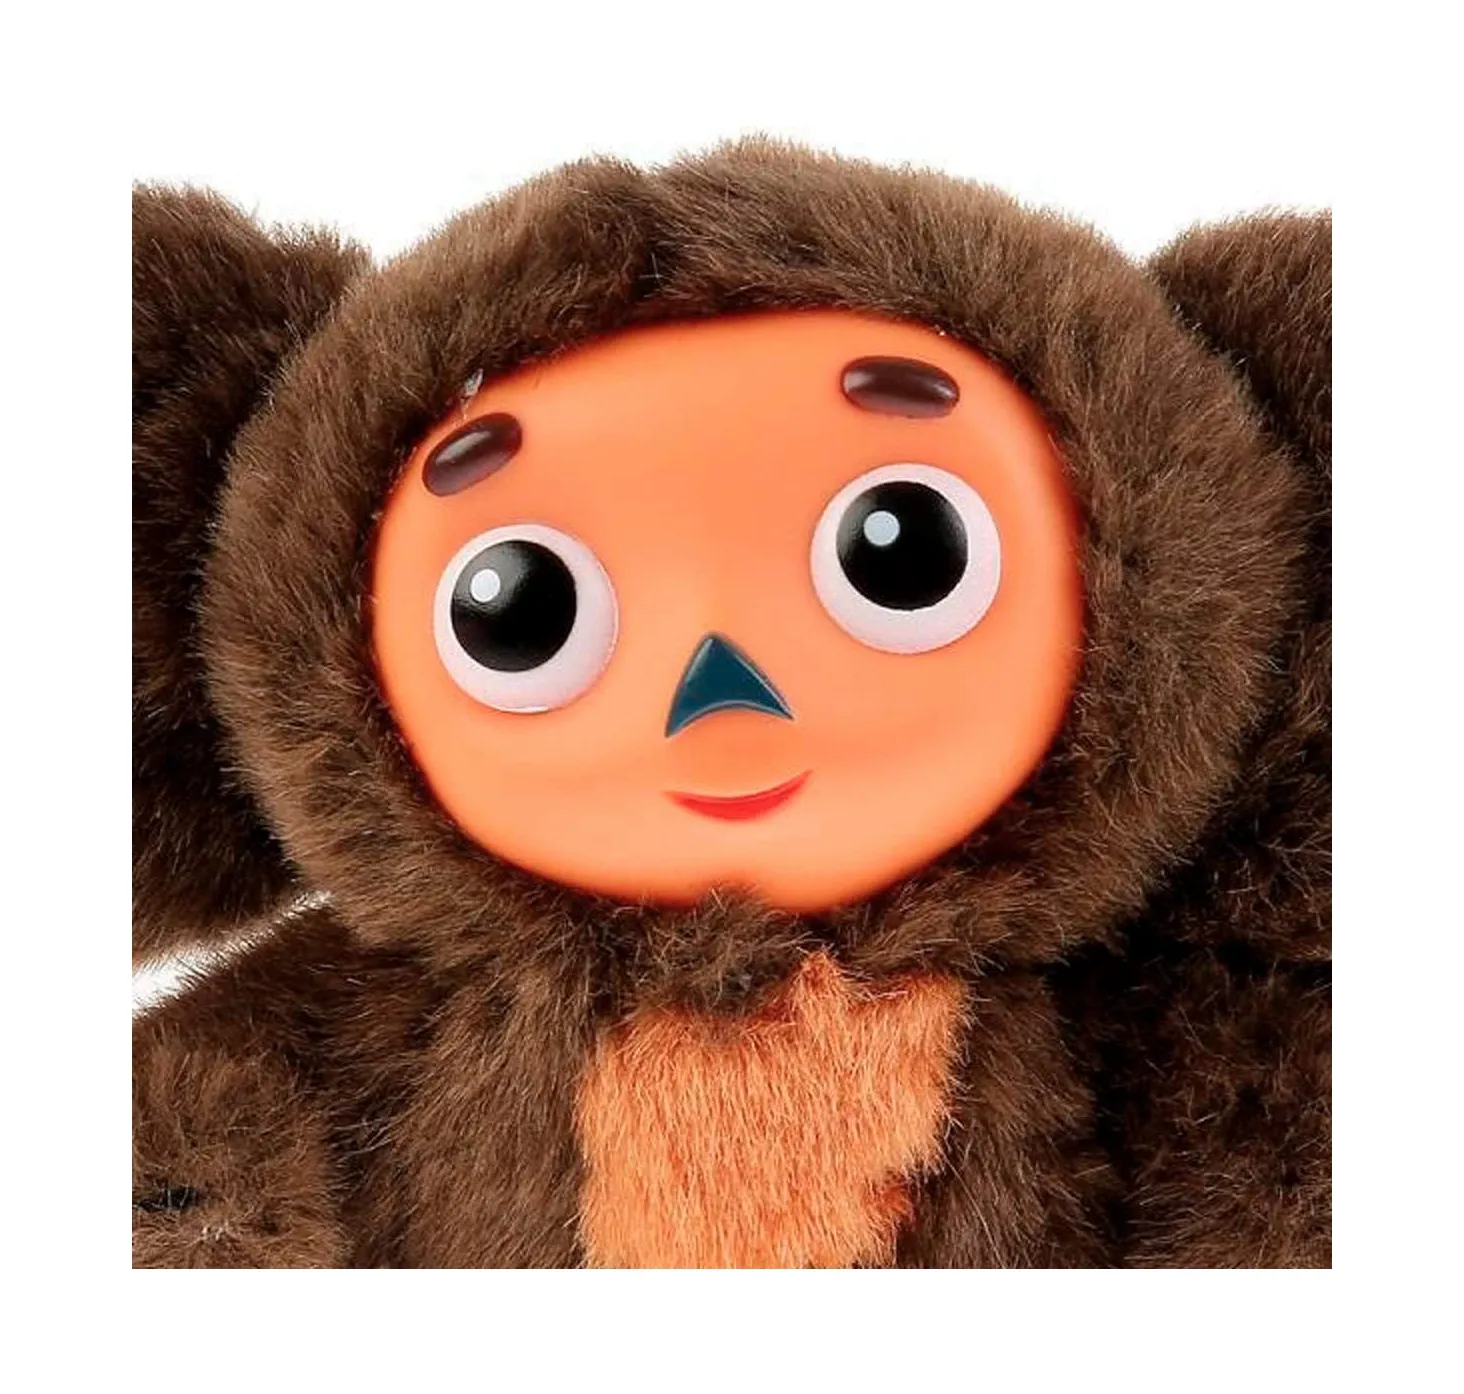 Cheburashka Russian Toy, Talking cheburashka monkey plush toy